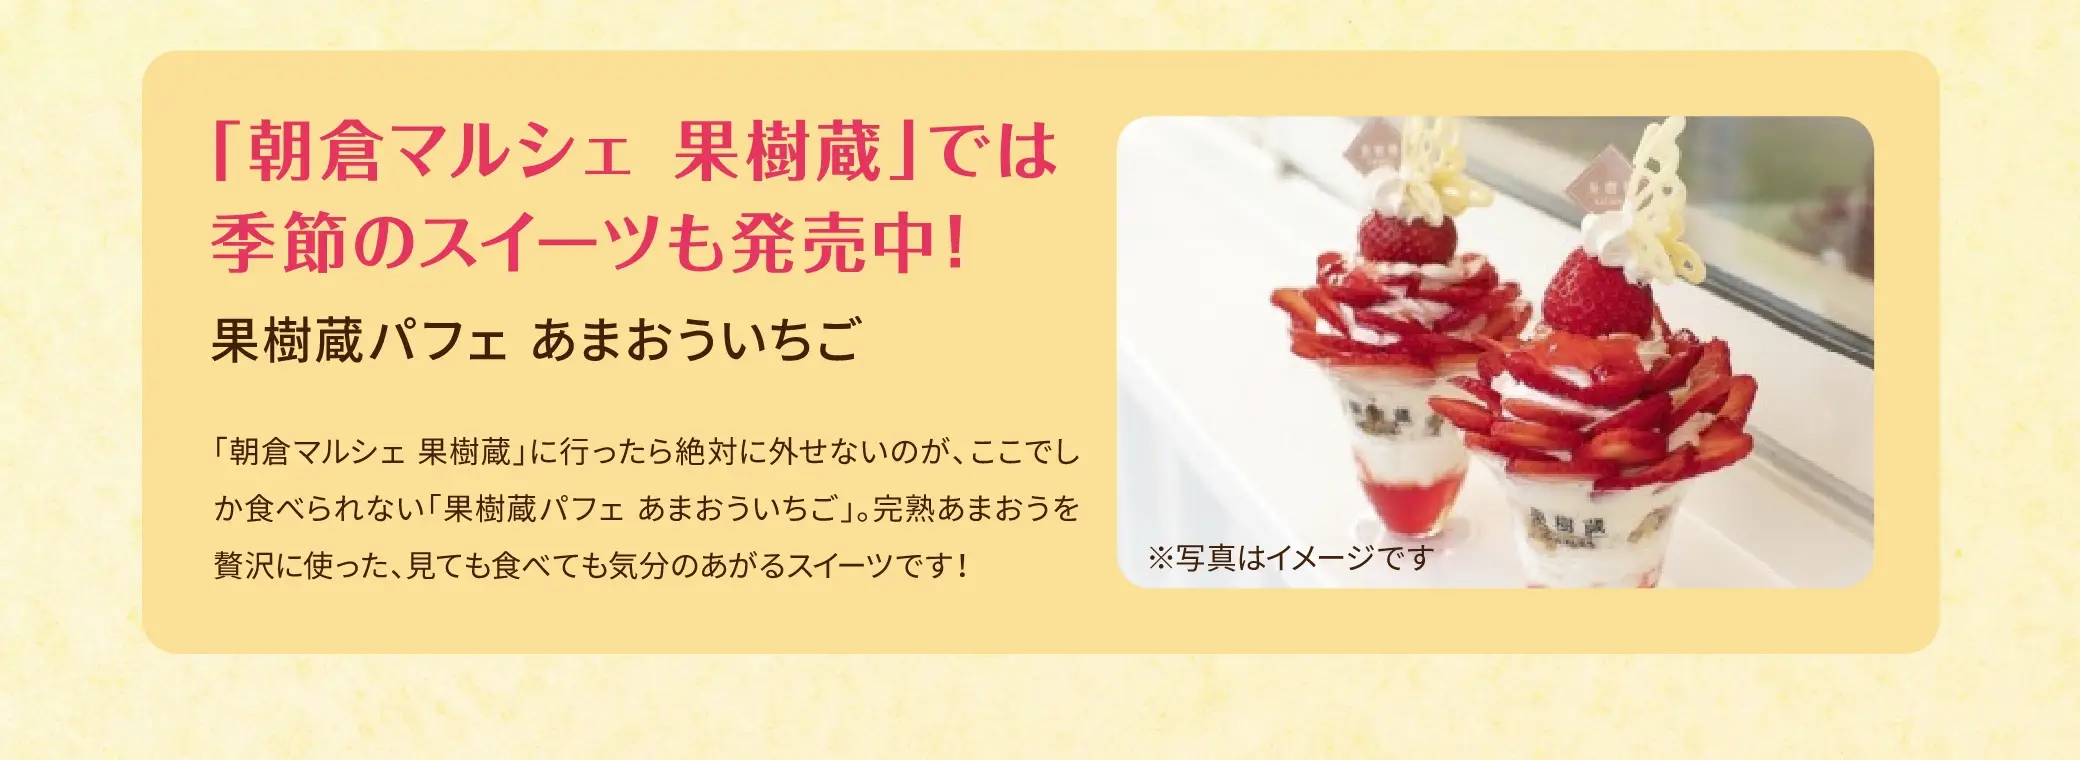 「朝倉マルシェ 果樹蔵」では季節のスイーツ(果樹蔵パフェ あまおういちご)販売中！